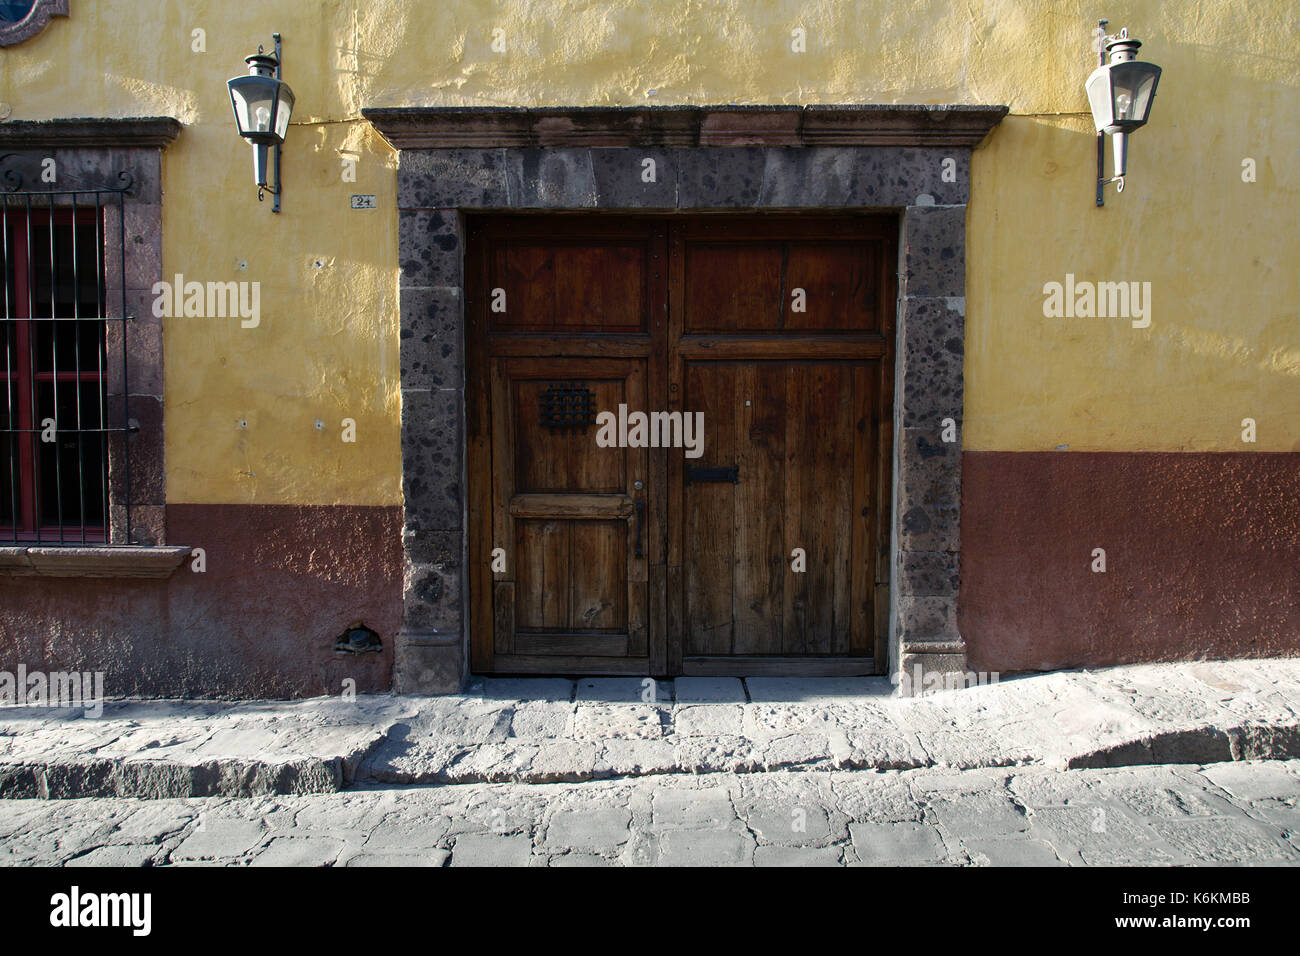 San Miguel de Allende, Guanajuato, Mexique - 2013 : une porte dans le style typique de la ville. Banque D'Images